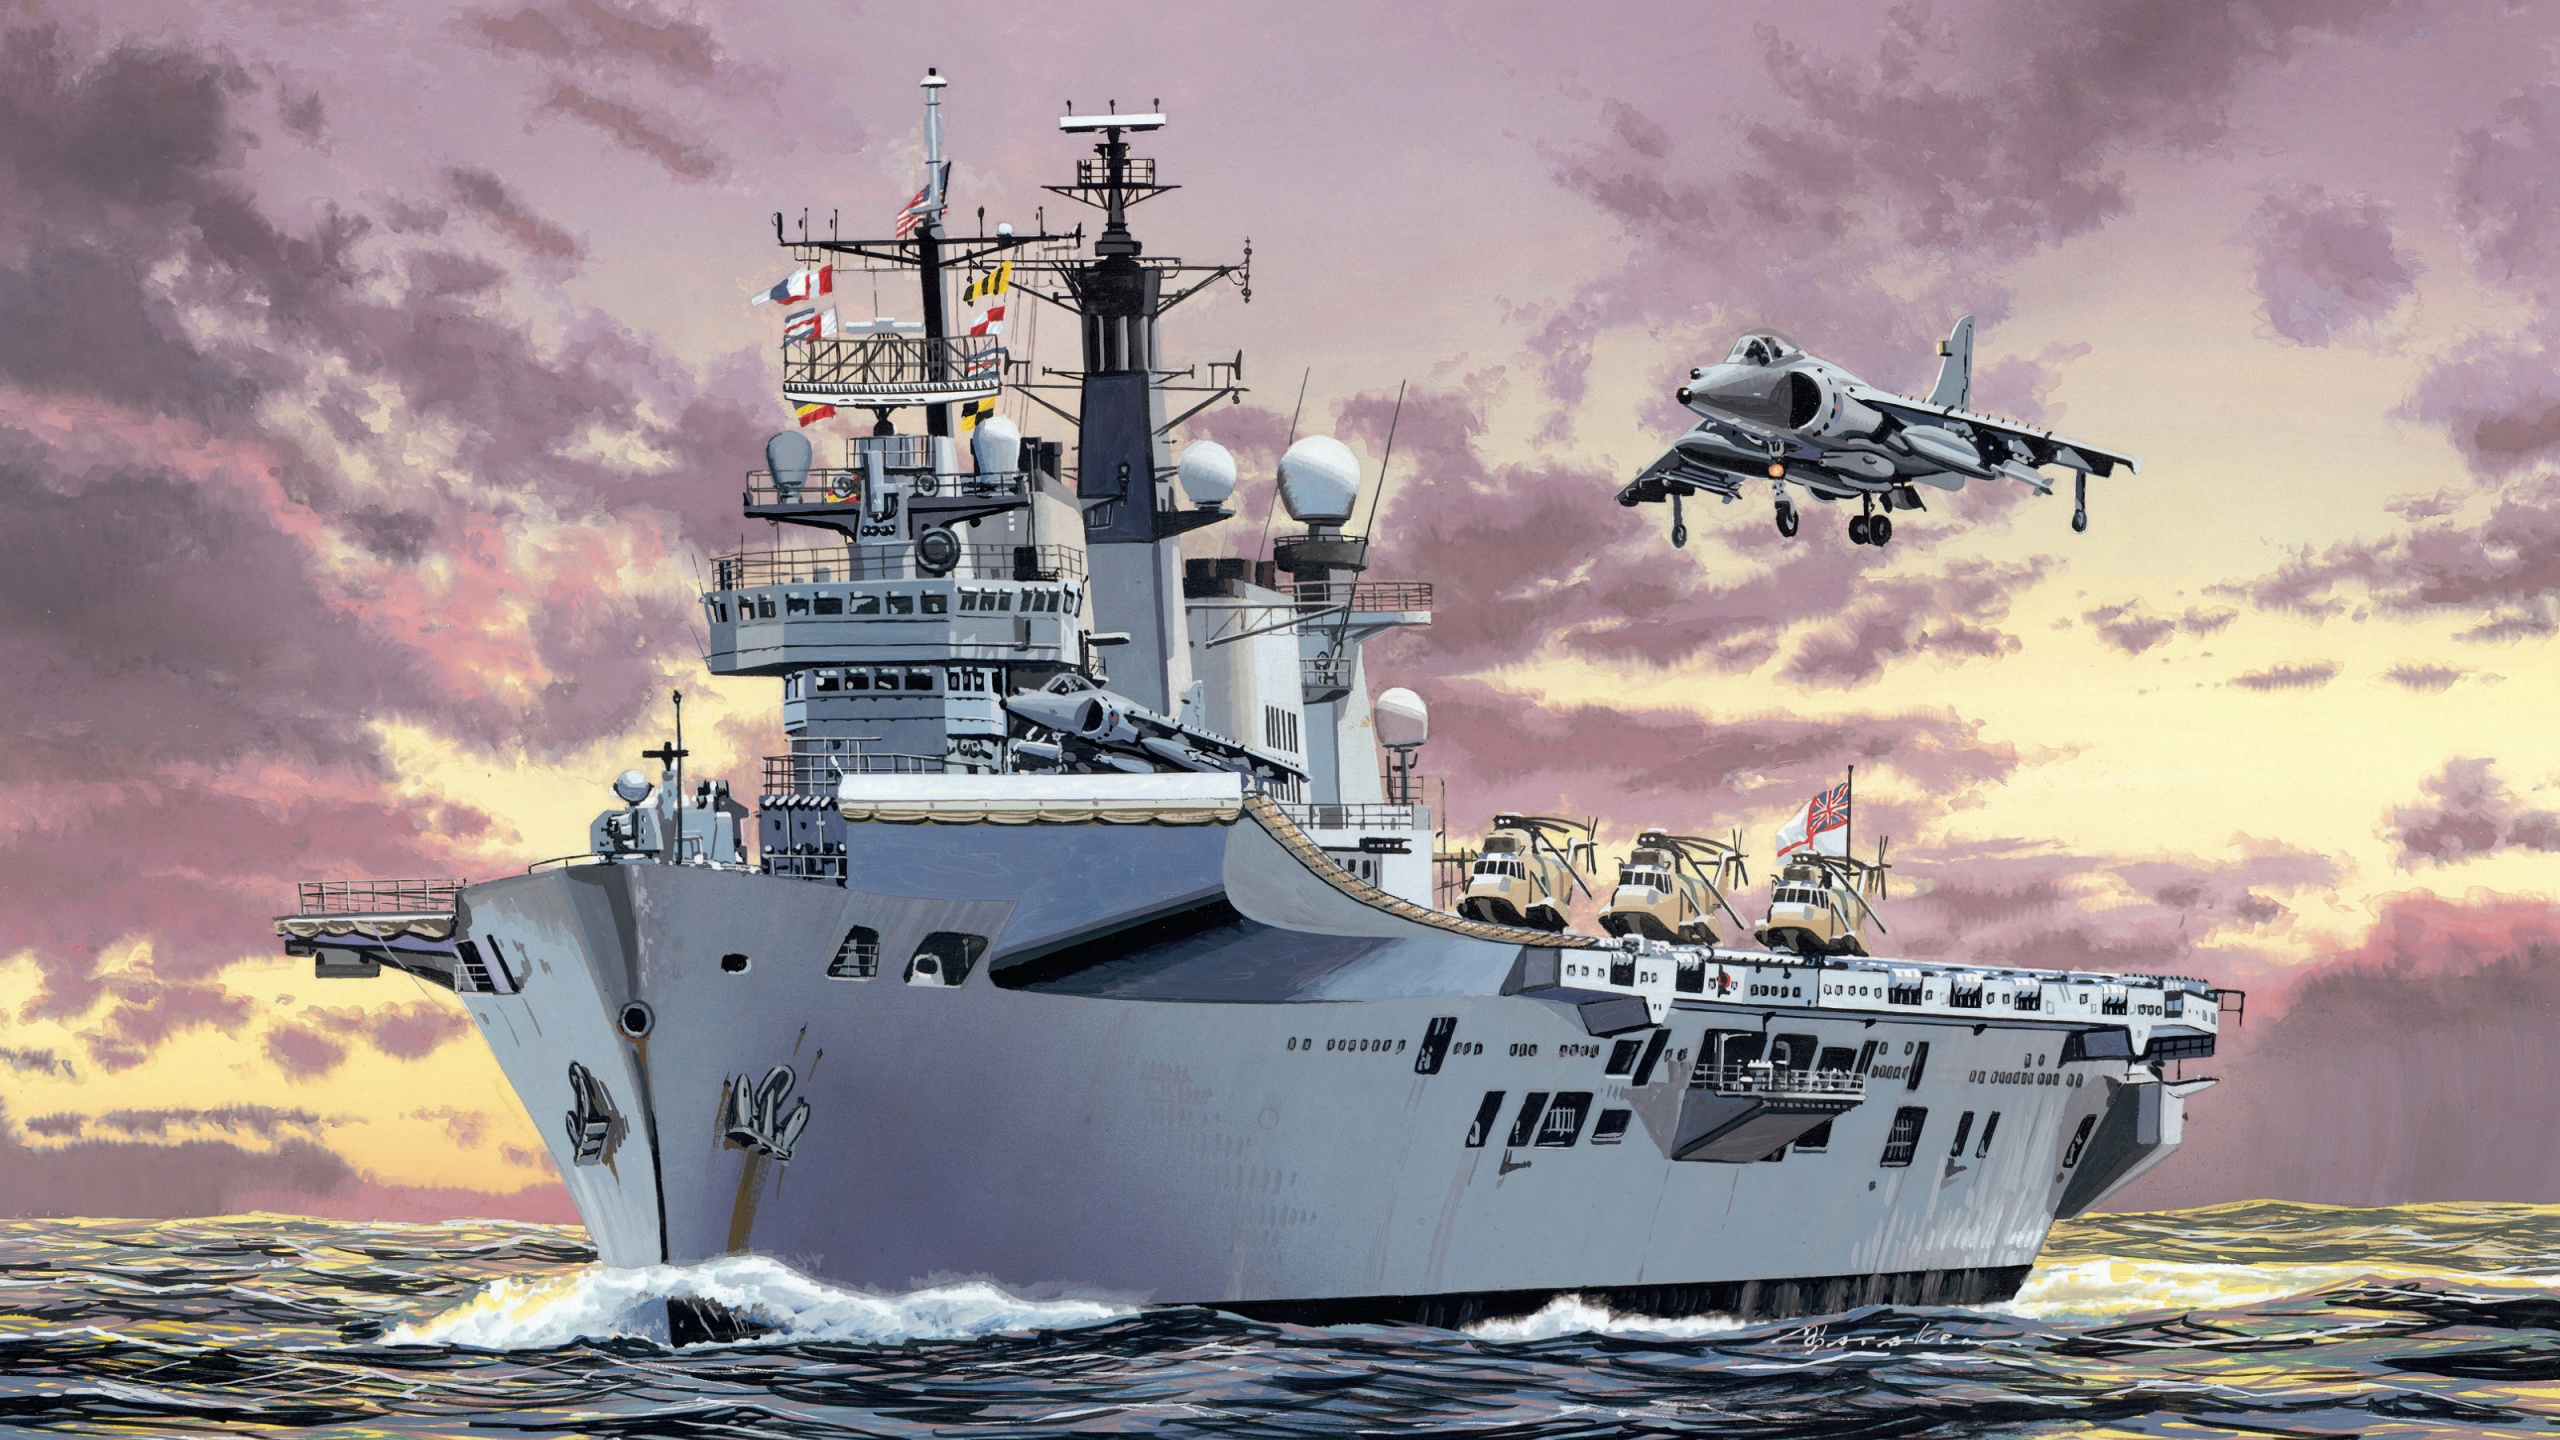 Обои ГМС Арк Ройял, королевский флот, авианосец, HMS прославленный, военный корабль в разрешении 2560x1440